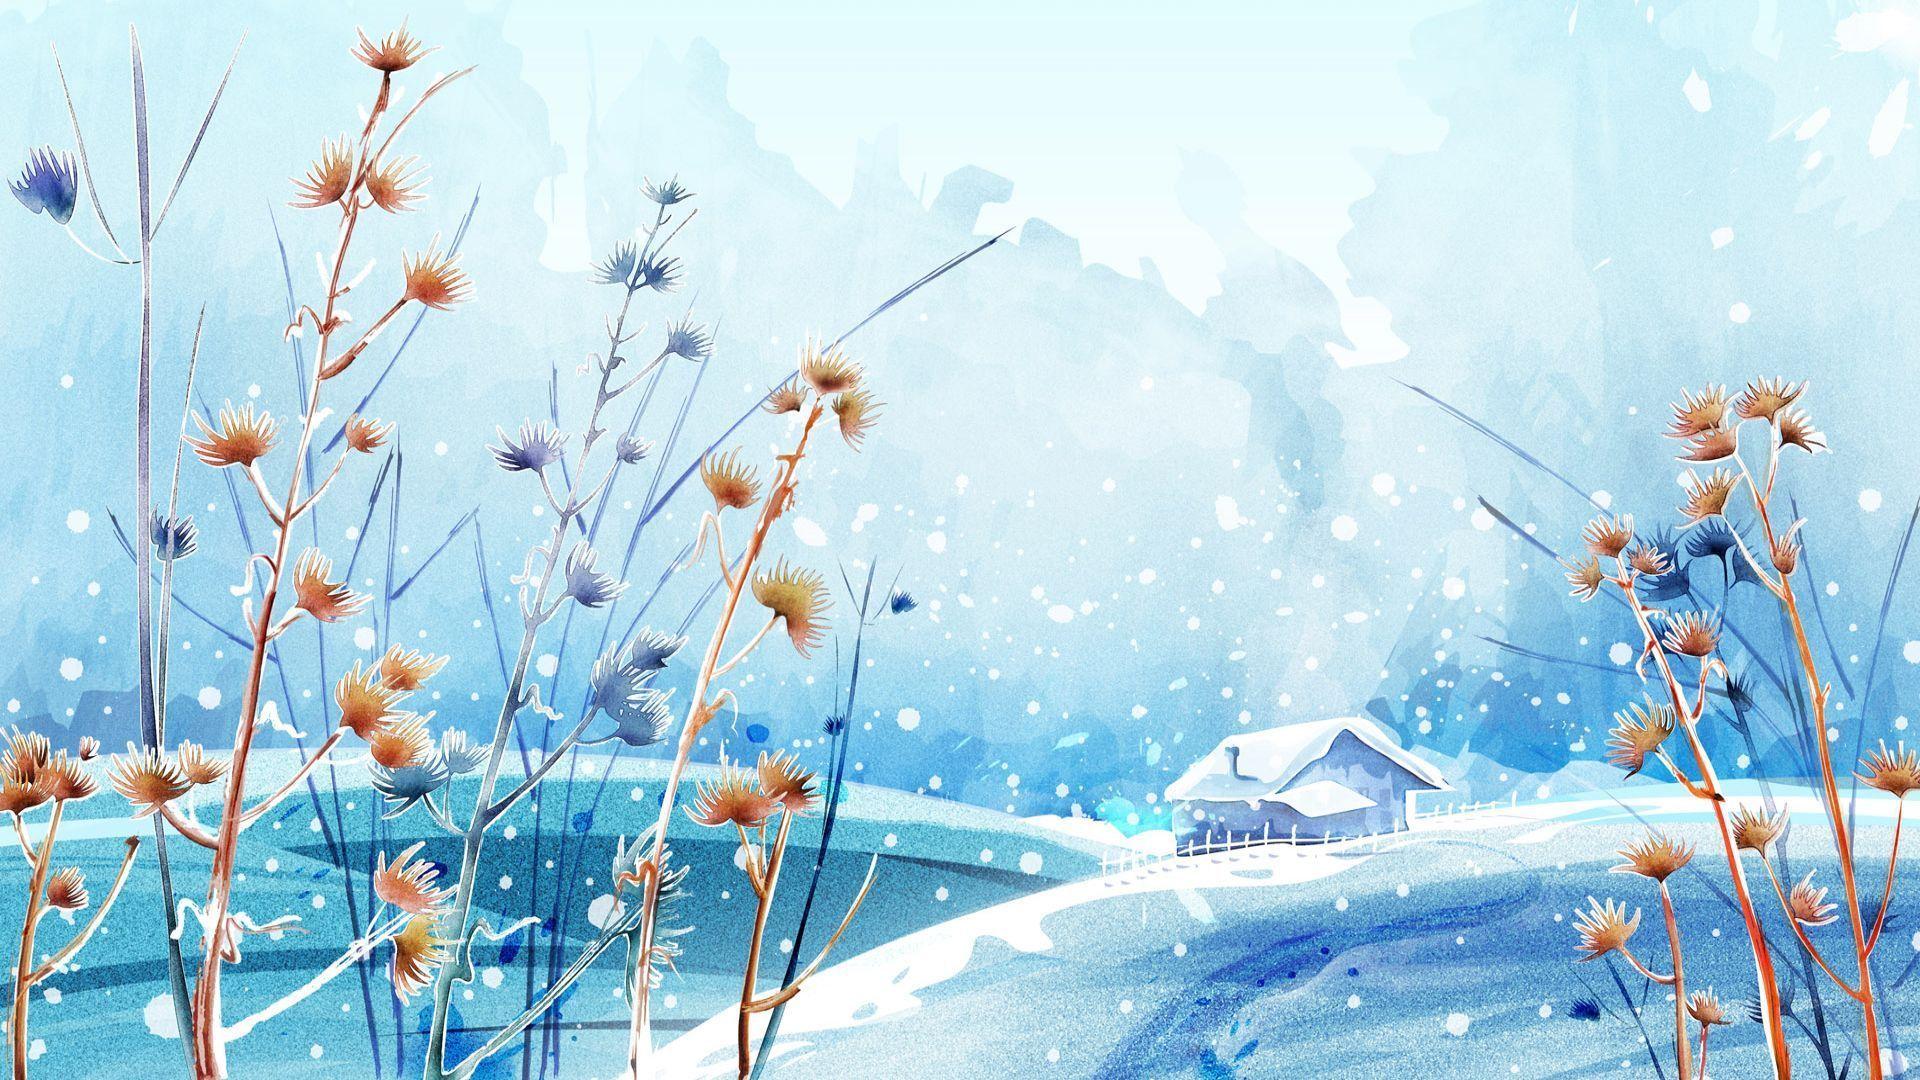 Anime Winter Scenery Wallpaper Wallpaper Background of Your Choice. Winter wallpaper, Scenery wallpaper, Landscape wallpaper